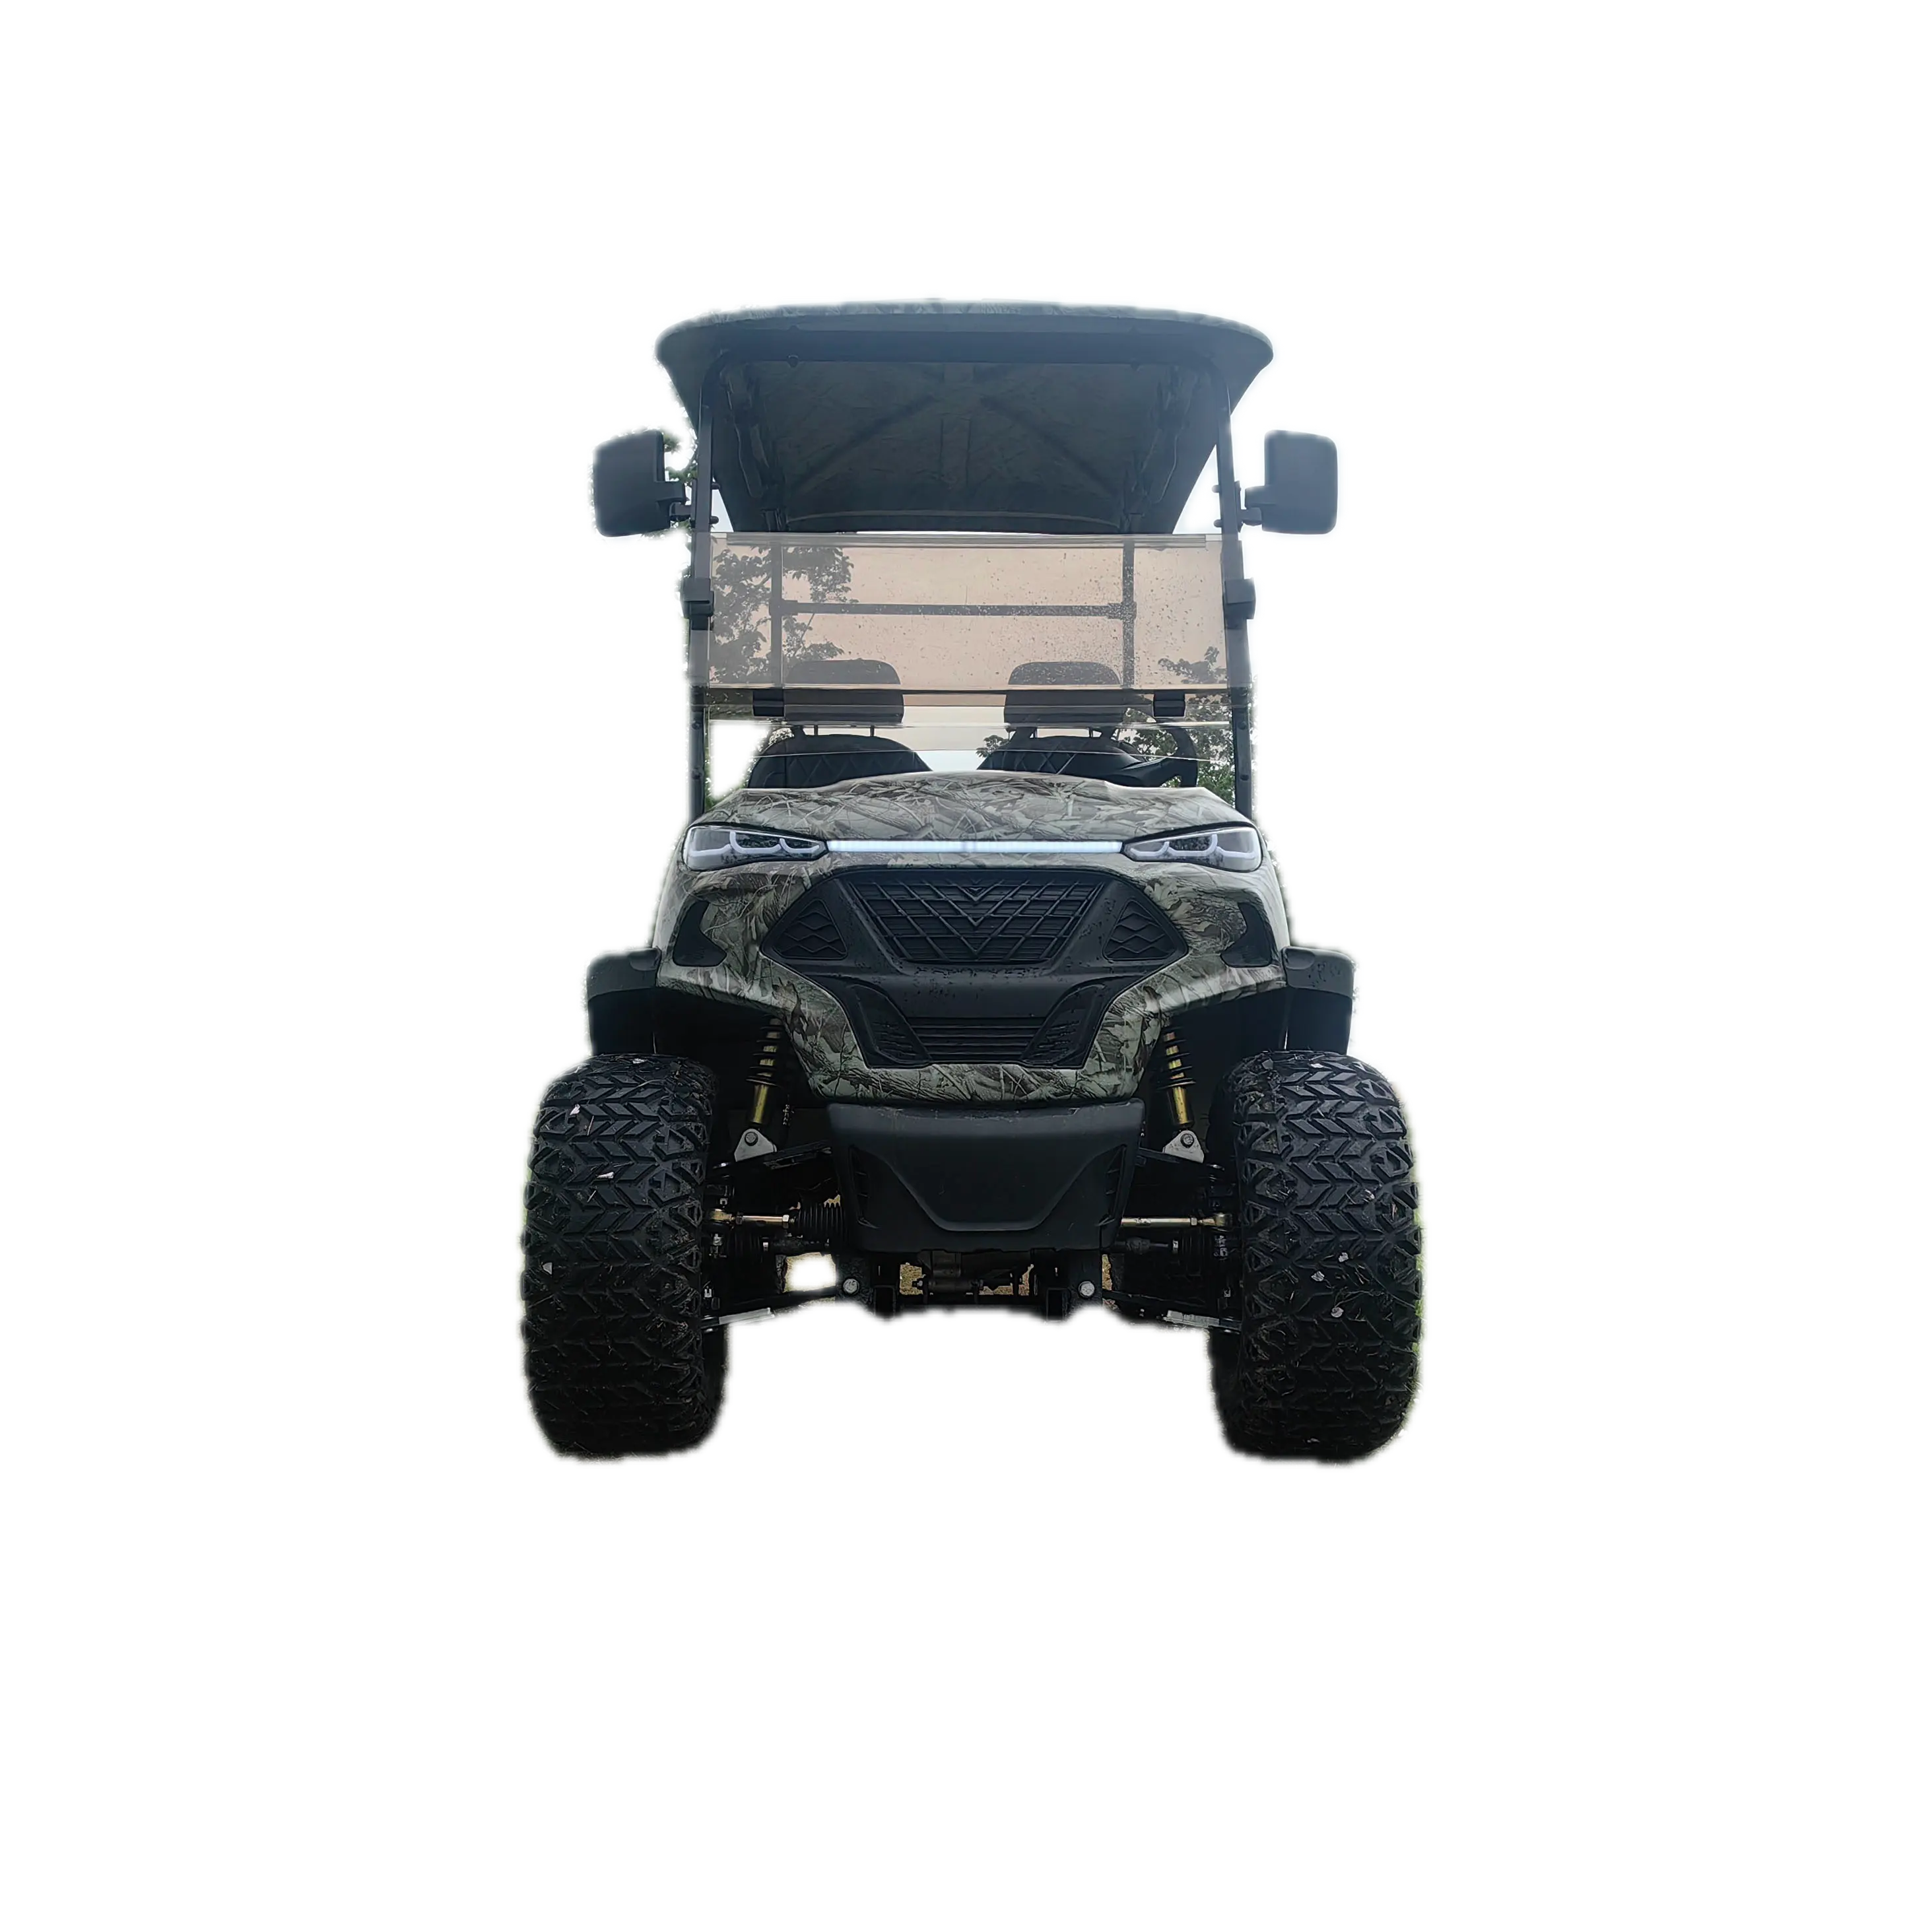 ACモーターと96V152Ahリチウムイオンバッテリーを備えた電気ゴルフカート高性能製品タイプゴルフカート